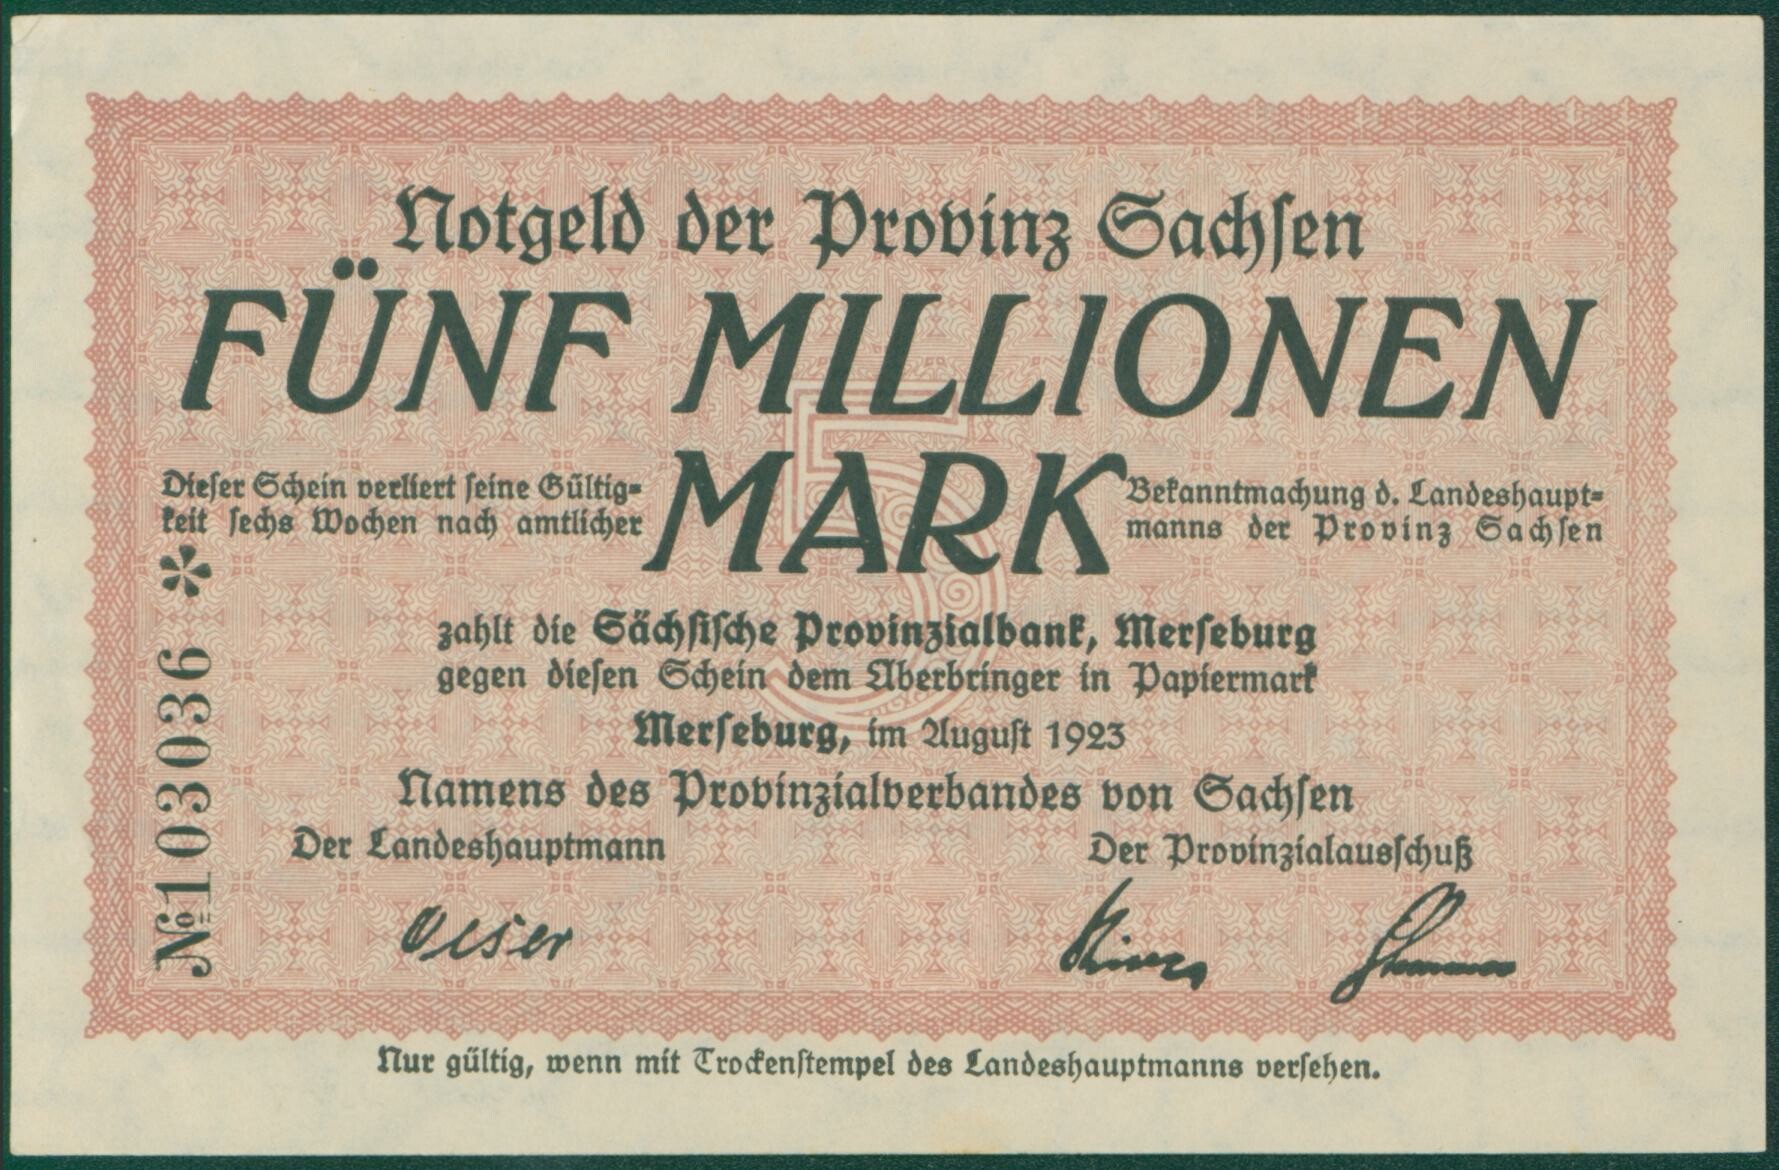 Notgeldschein der Provinz Sachsen "Fünf Millionen Mark", No. 03036 (Kulturhistorisches Museum Schloss Merseburg CC BY-NC-SA)